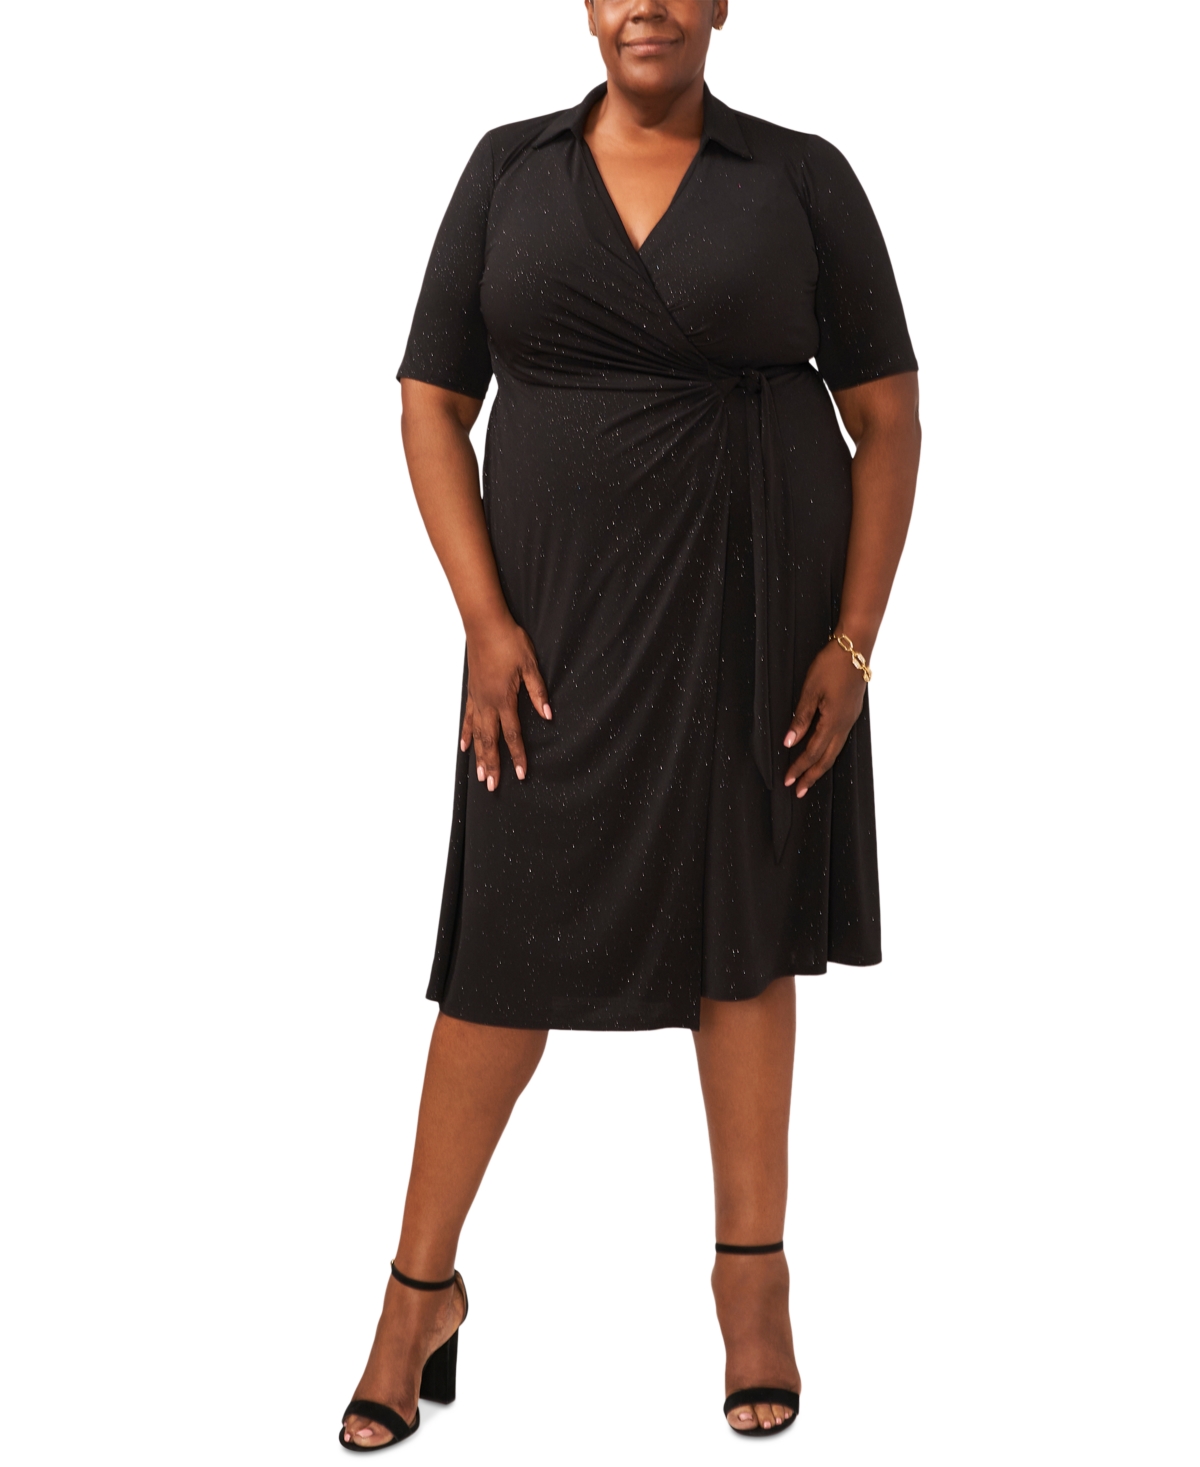 Msk Plus Size Glittered Wrap Dress In Black,black